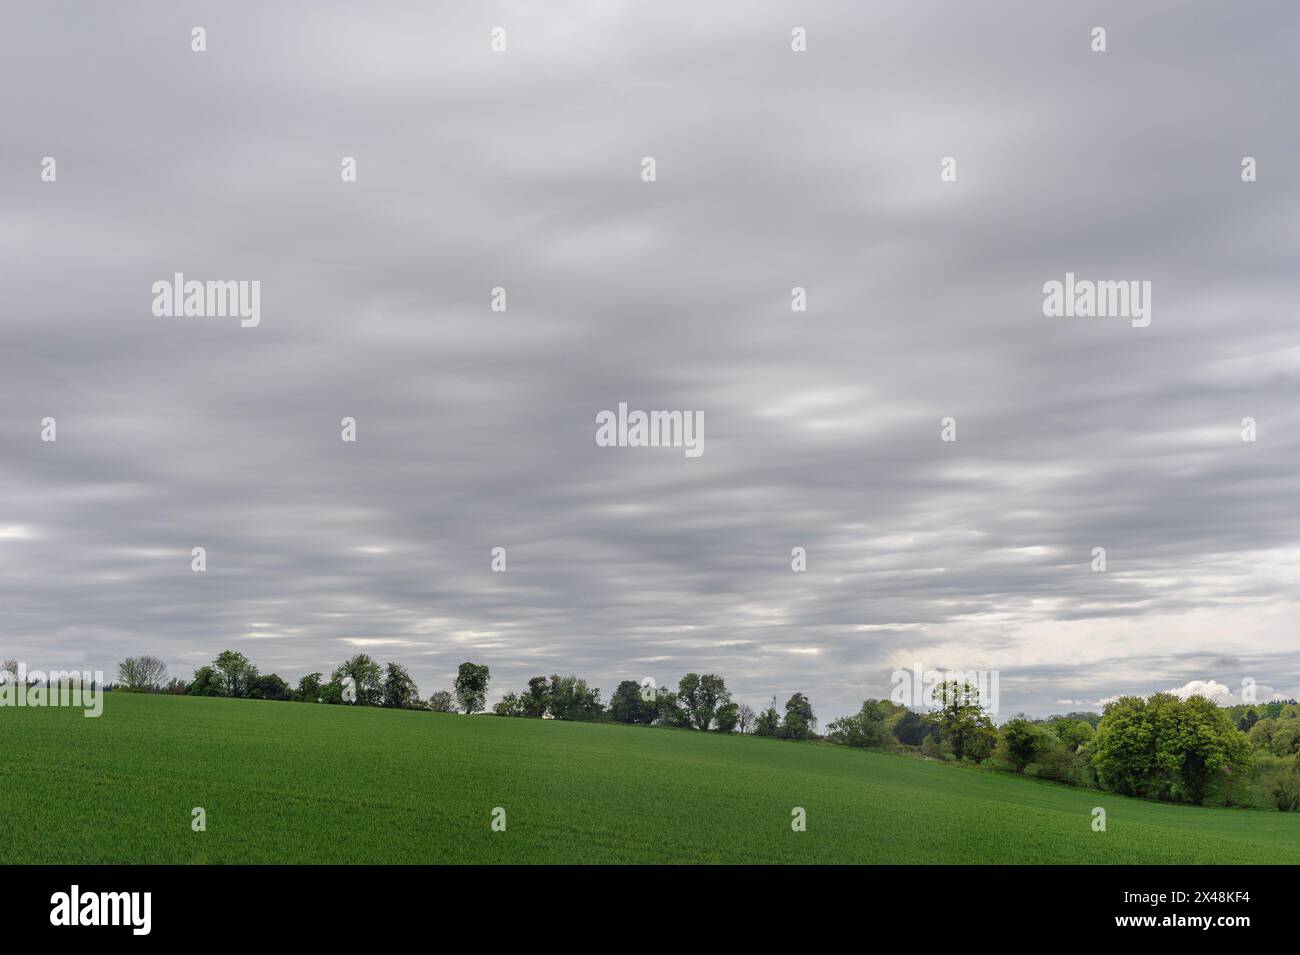 Graue Stratocumulus-Wolken am grauen Himmel über einem grünen Feld mit Bäumen Stockfoto